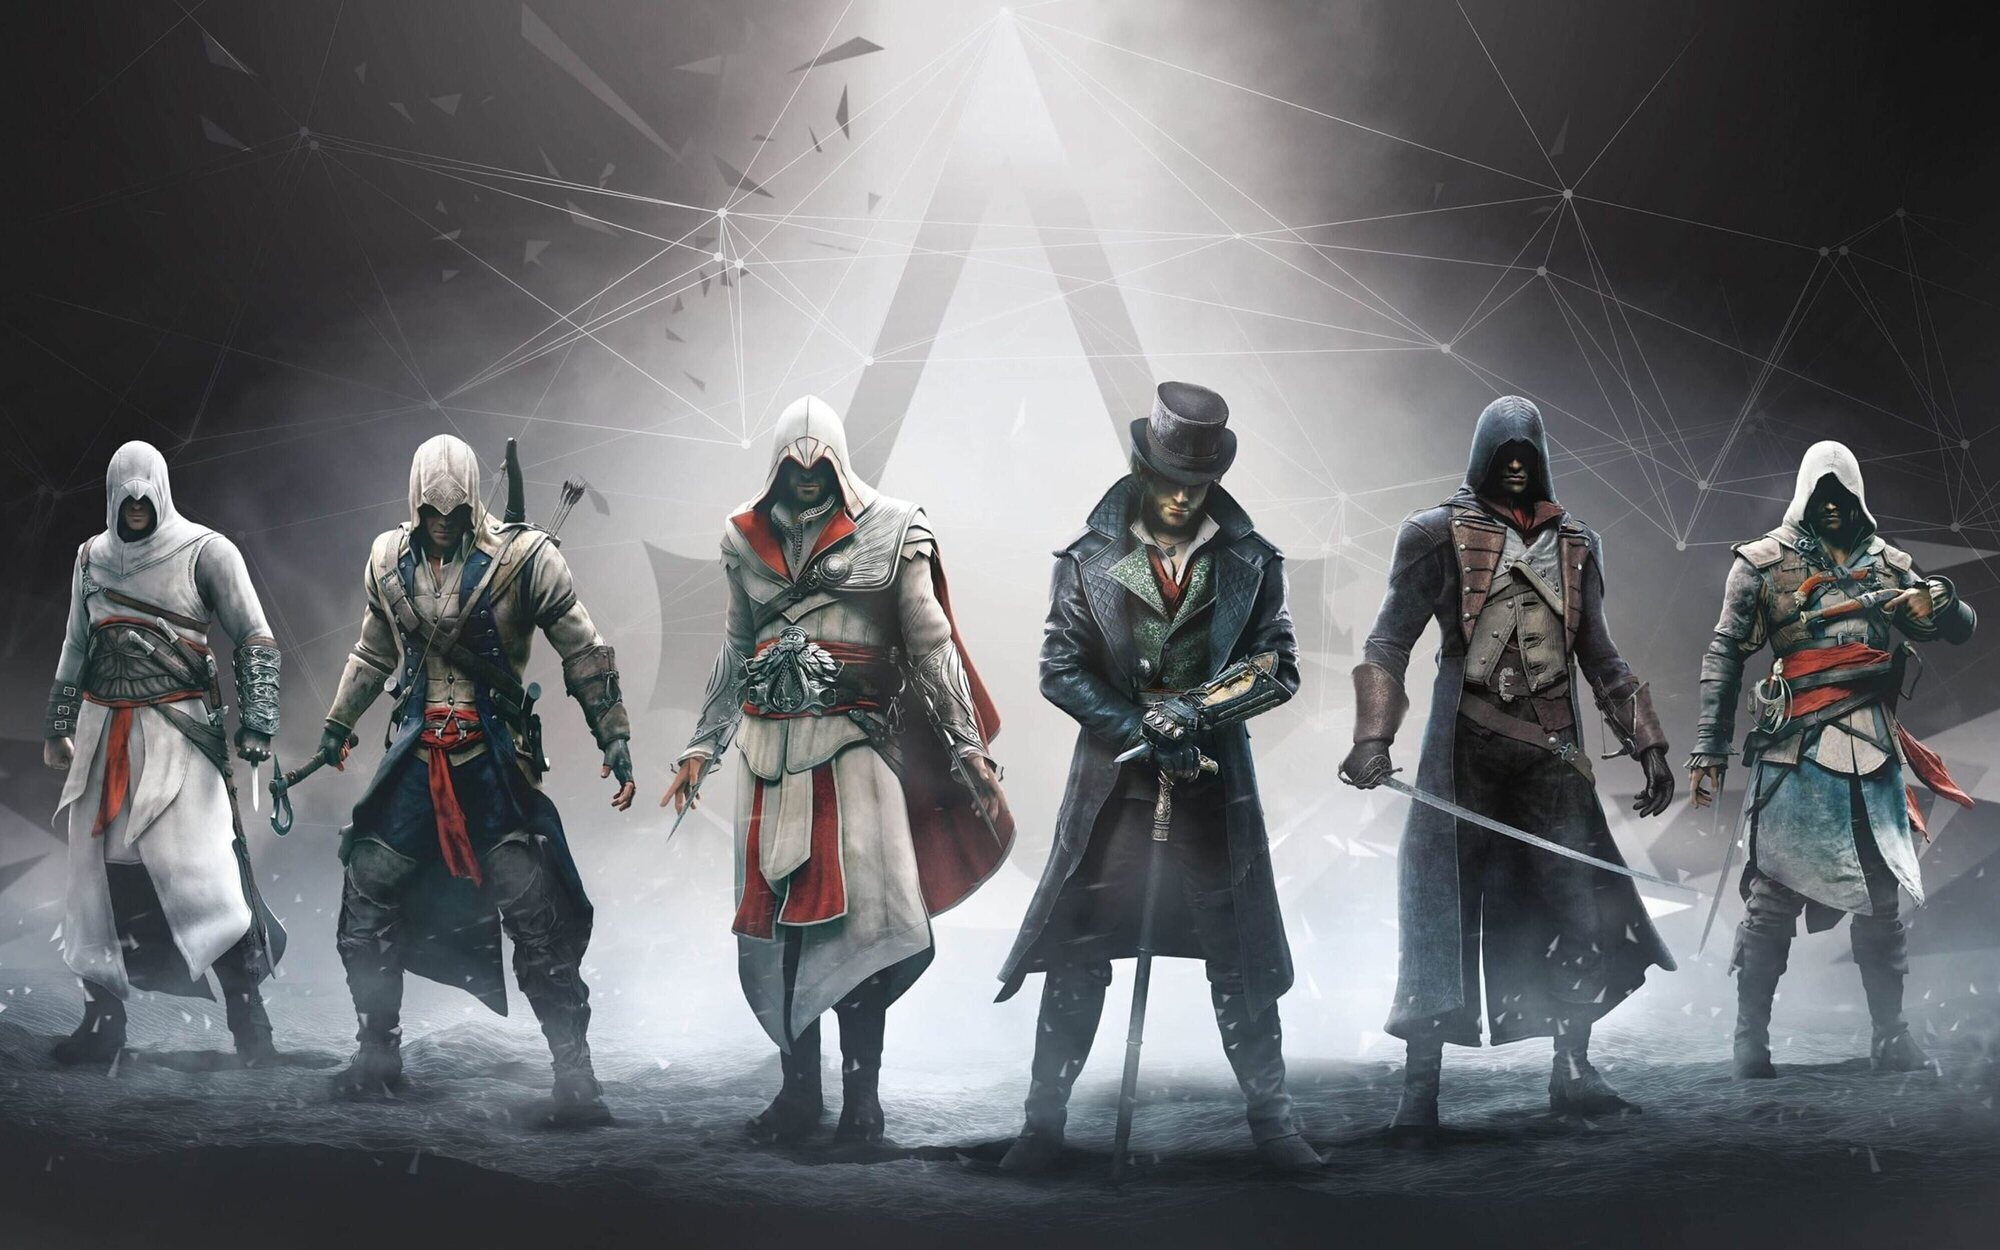 Este será uno de los escenarios de 'Assassin's Creed Infinity', según un importante periodista